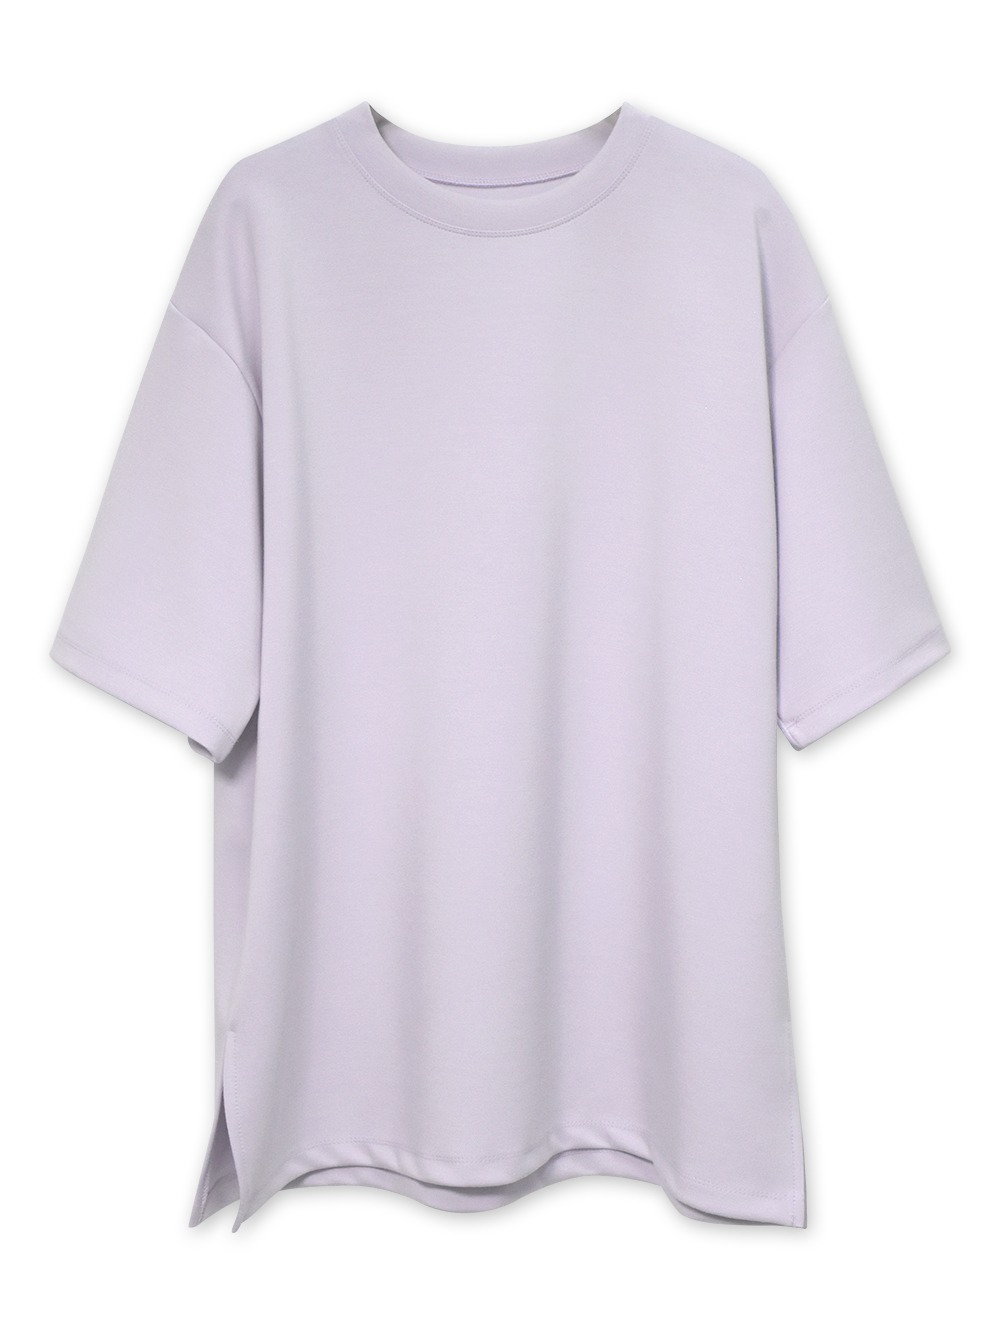 소프트 루즈핏 반팔 티셔츠 (2차 예약주문) - 허앤쉬